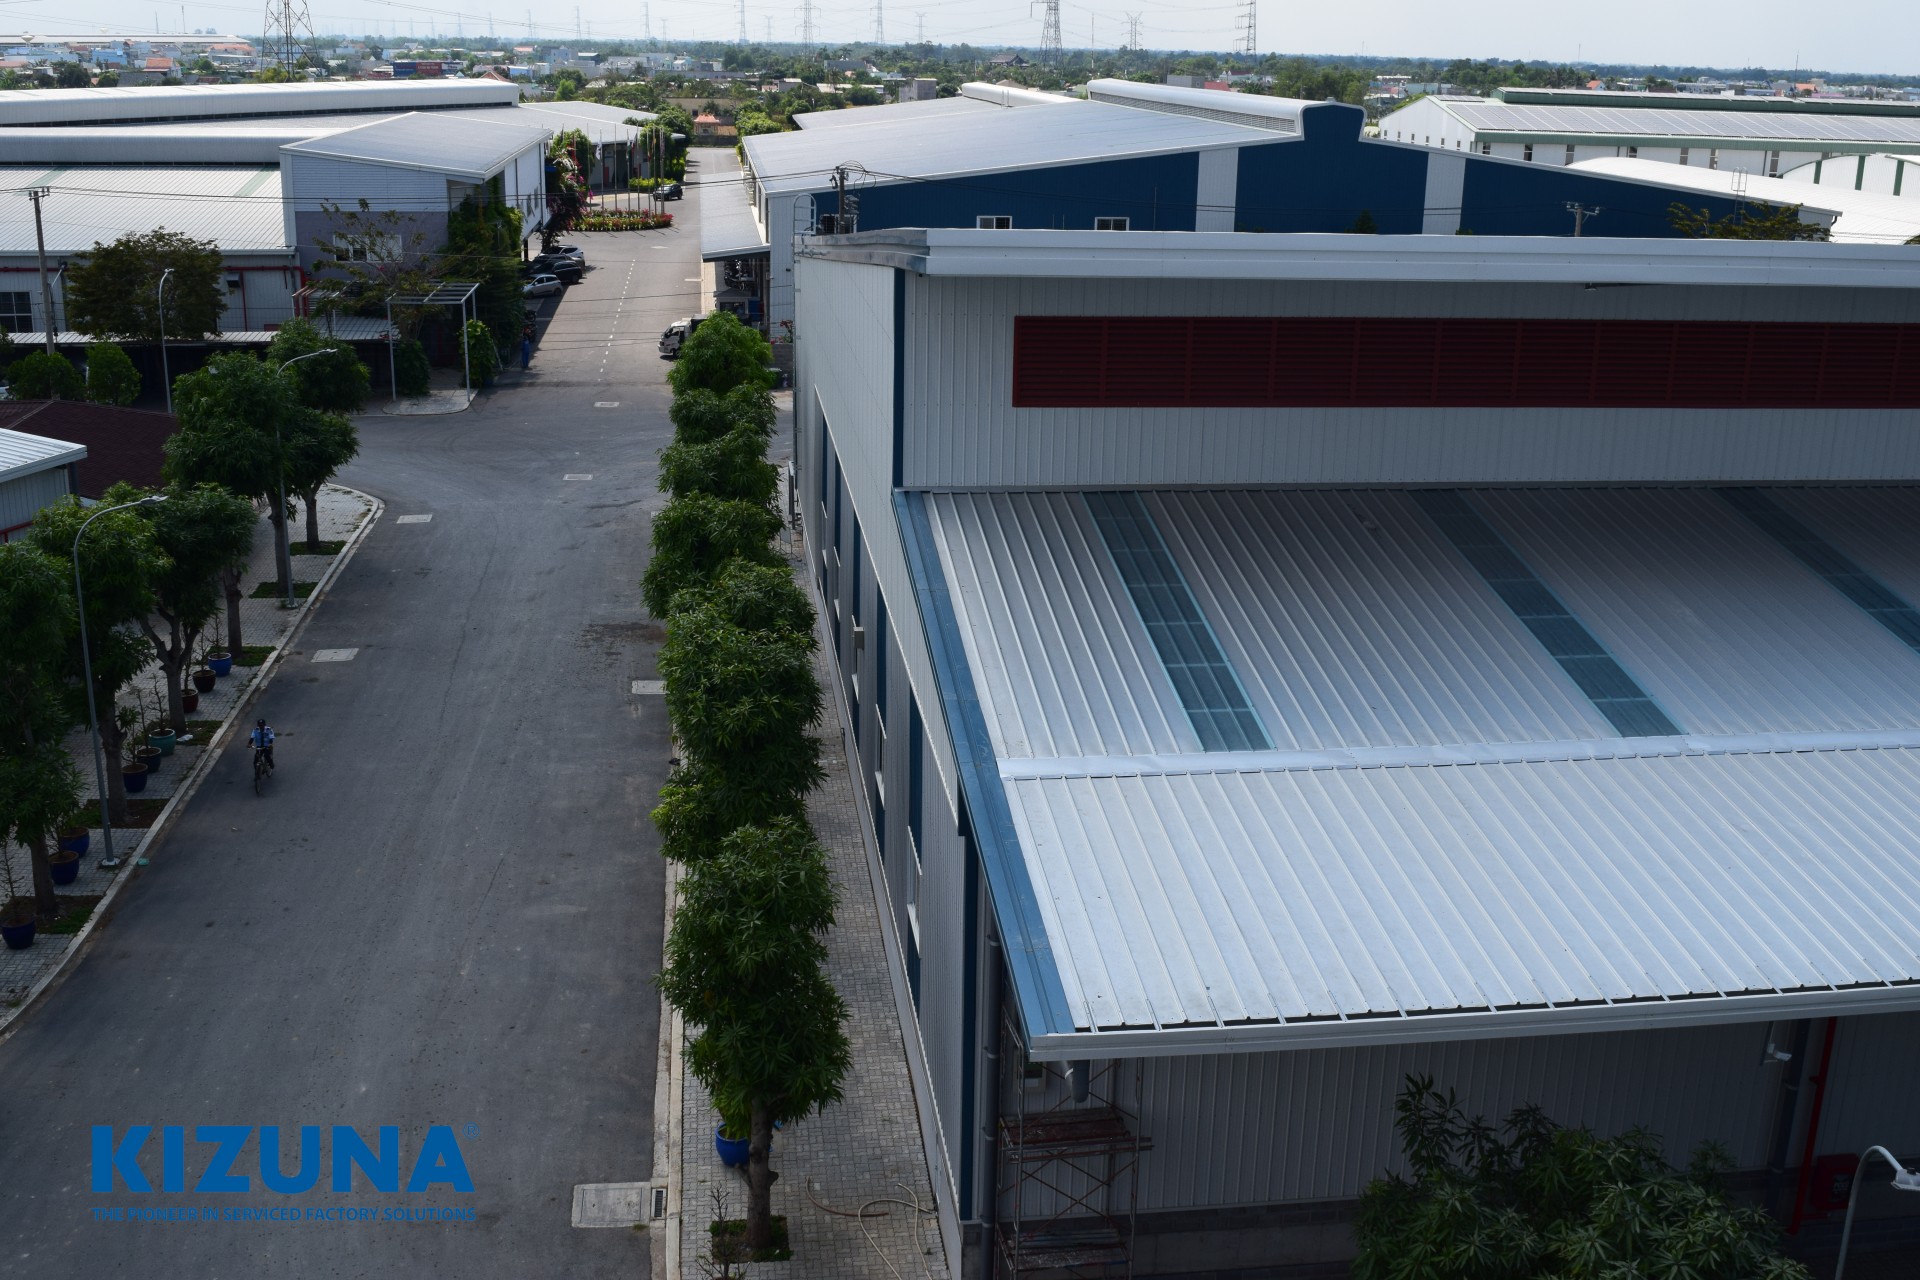 Kizuna Nhà xưởng 2000m2 là một trong những dự án đã và đang gặt hái nhiều thành công tại Việt Nam khi cung cấp các nhà xưởng chất lượng cao cho nhiều doanh nghiệp lớn. Với quy mô lớn đến 2000m2, Kizuna Nhà xưởng đáp ứng được mọi nhu cầu sản xuất, lưu trữ và vận chuyển của quý khách hàng.